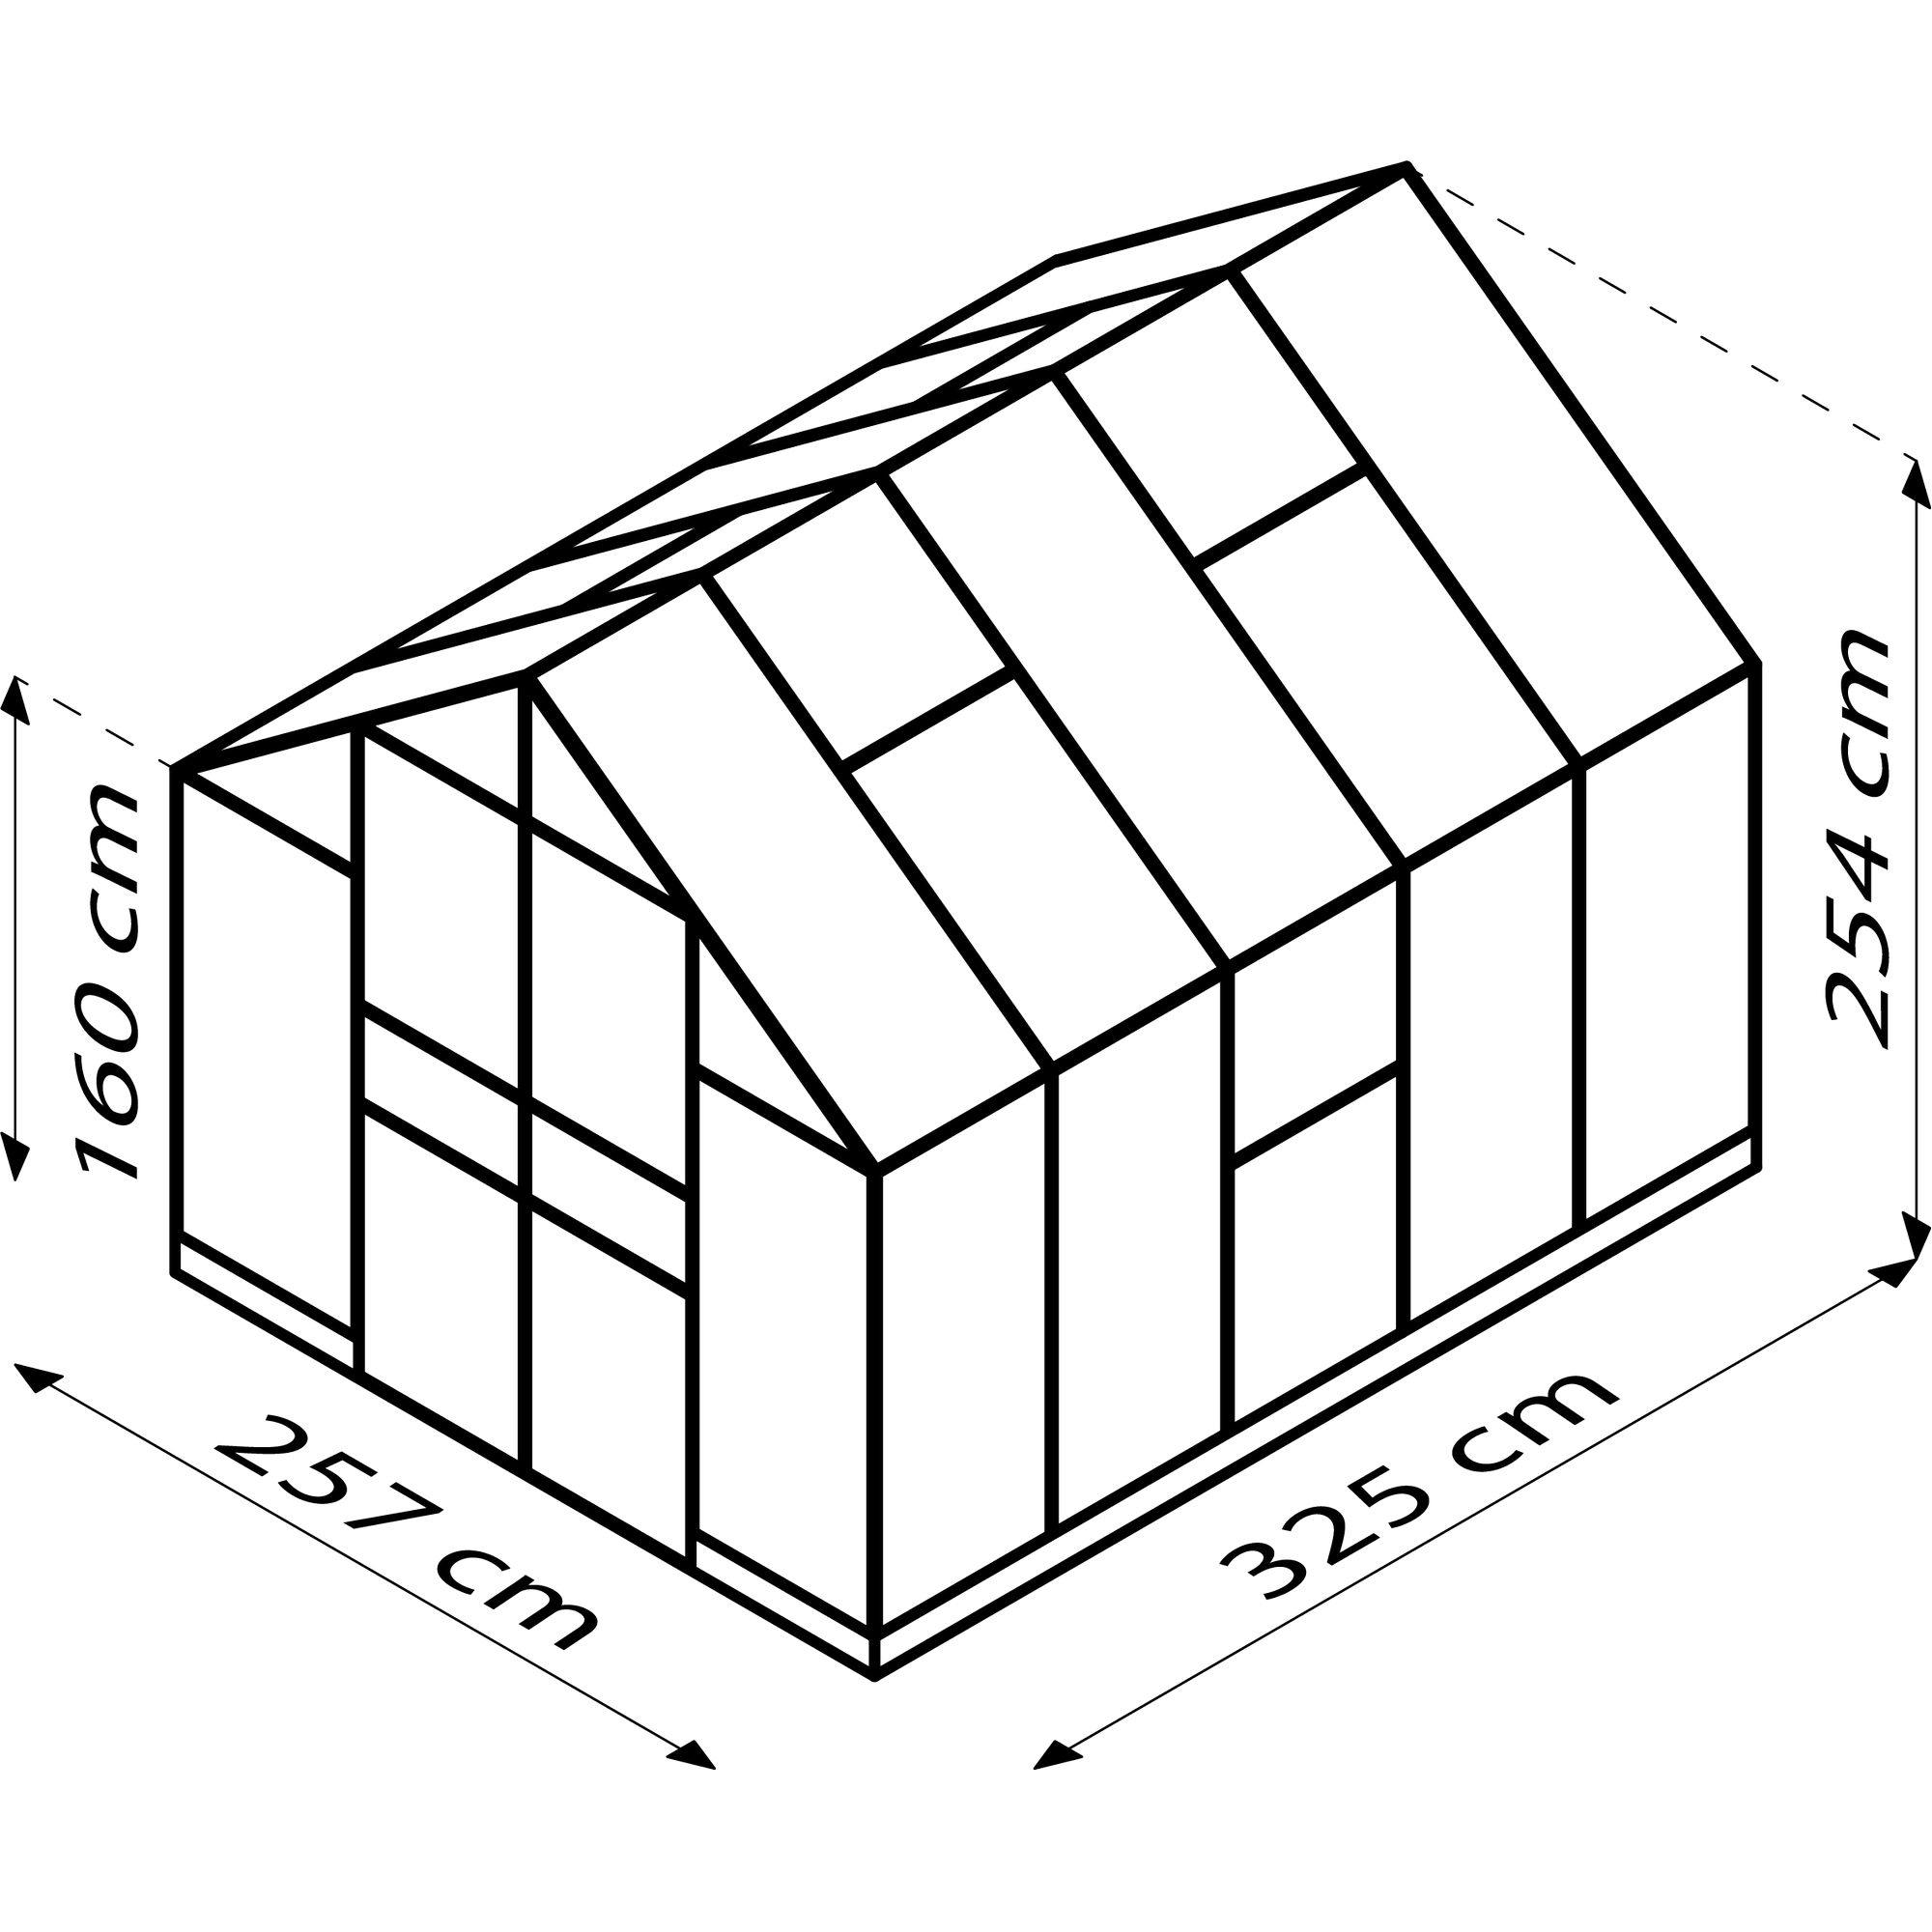 Gewächshaus 'Olymp 8300' 8,3 m² 254,4 x 316,6 cm 6 mm Hohlkammerplatten schwarz + product picture